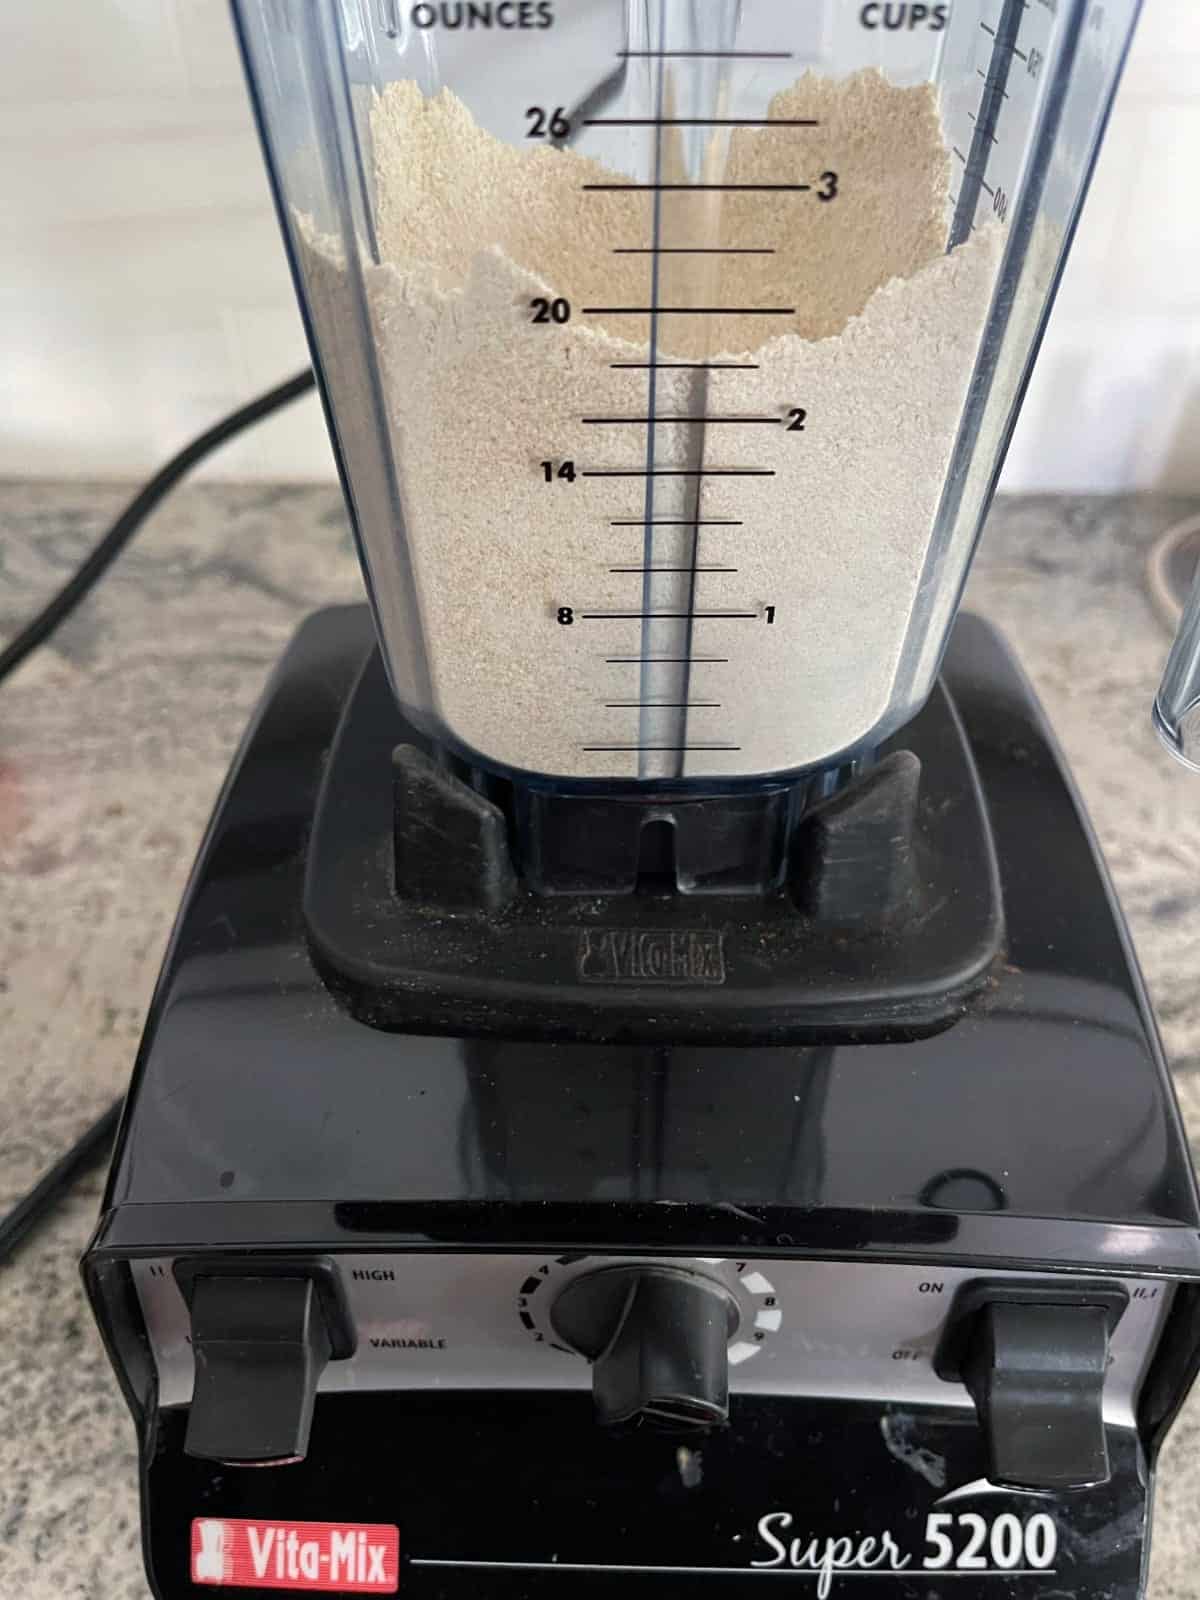 Blending quinoa into flour in Vitamix.